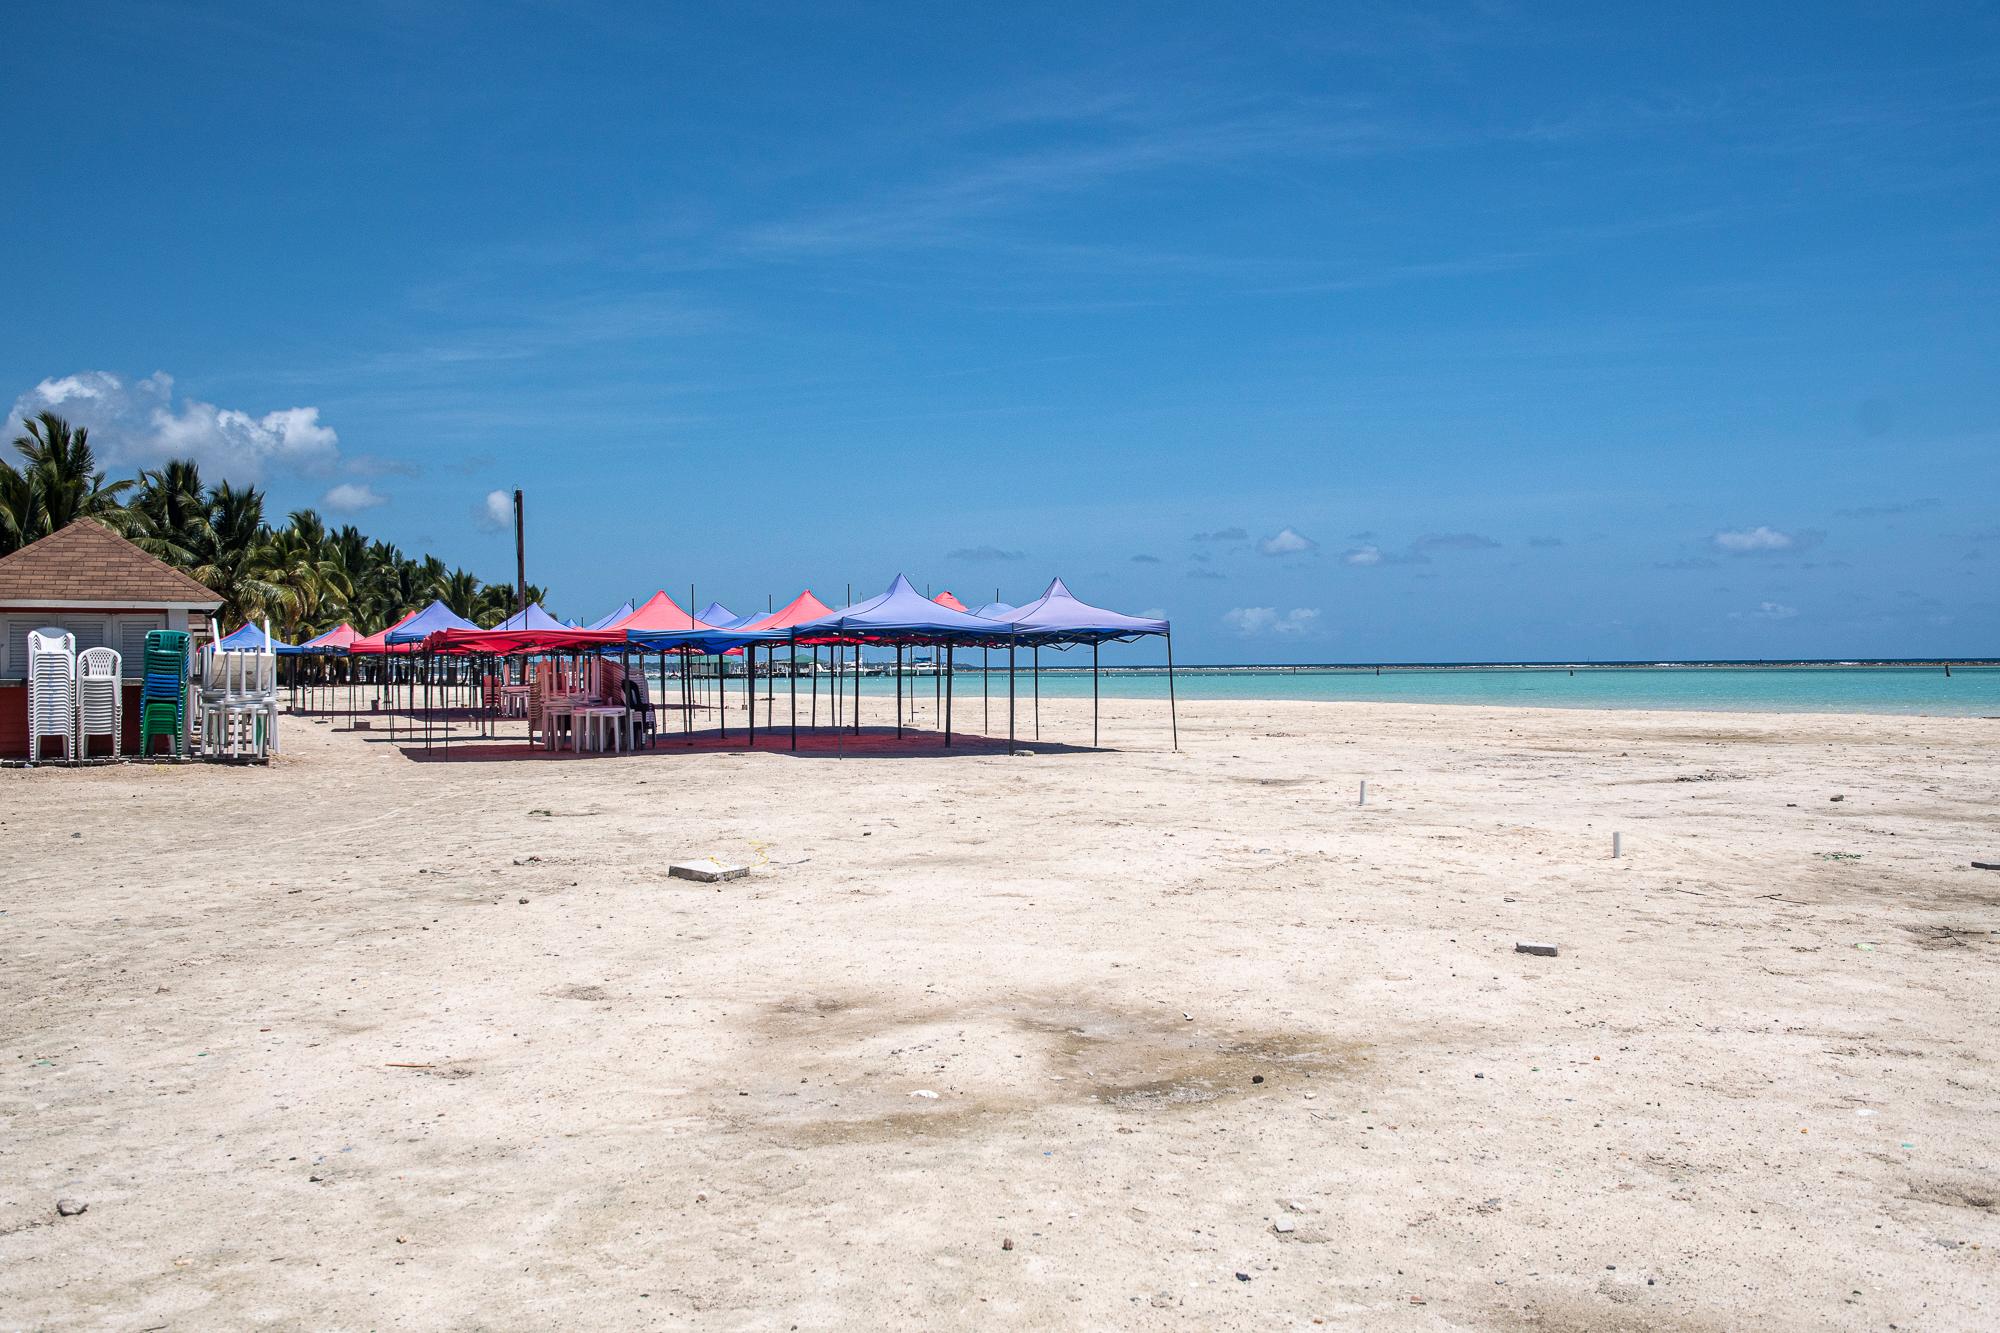 La popular playa de Boca Chica luce desierta en este Viernes Santo, cuando todos los negocios permanecen cerrados, acatando las medidas de cuarentena y aislamiento social impuestas para reducir los contagios por coronavirus en el país.